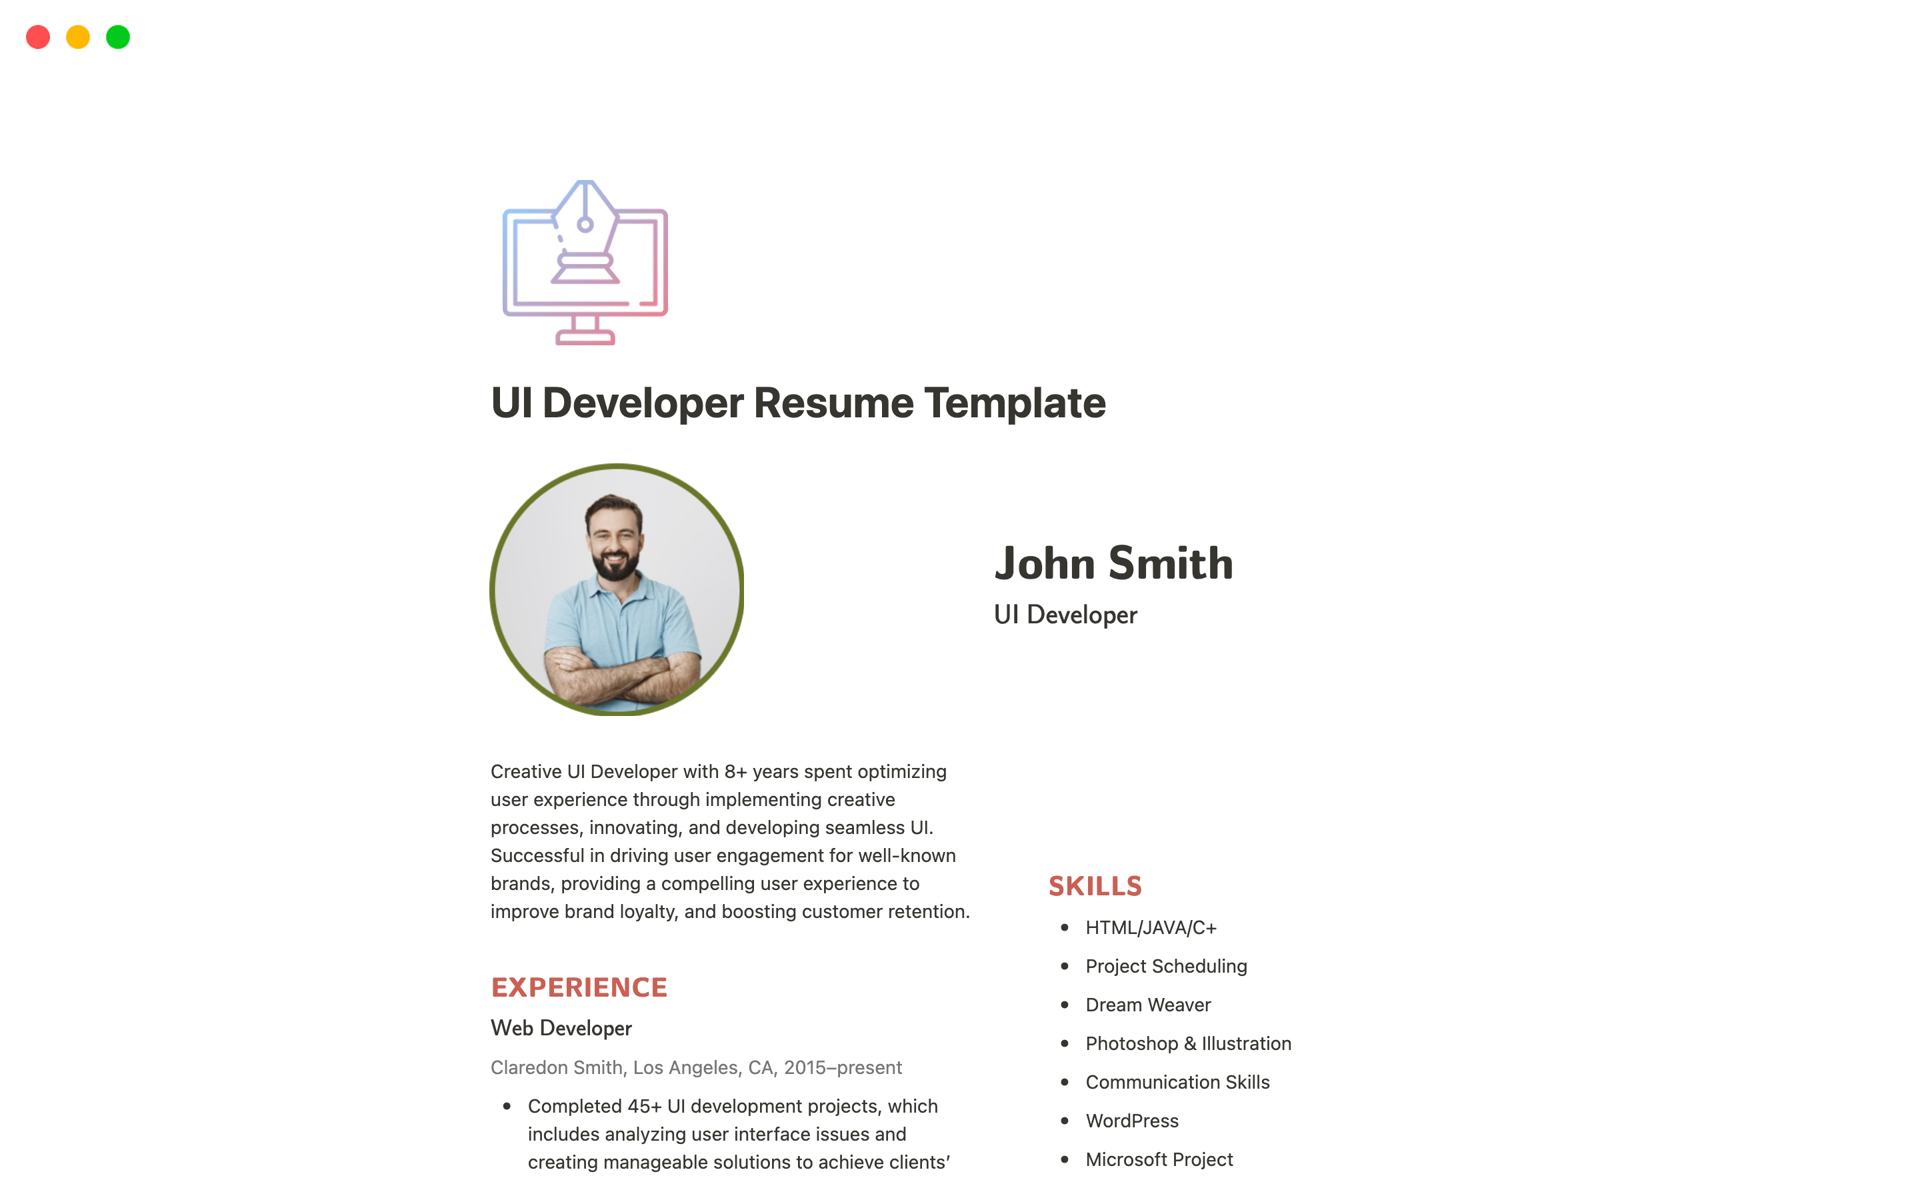 Uma prévia do modelo para UI Developer Resume